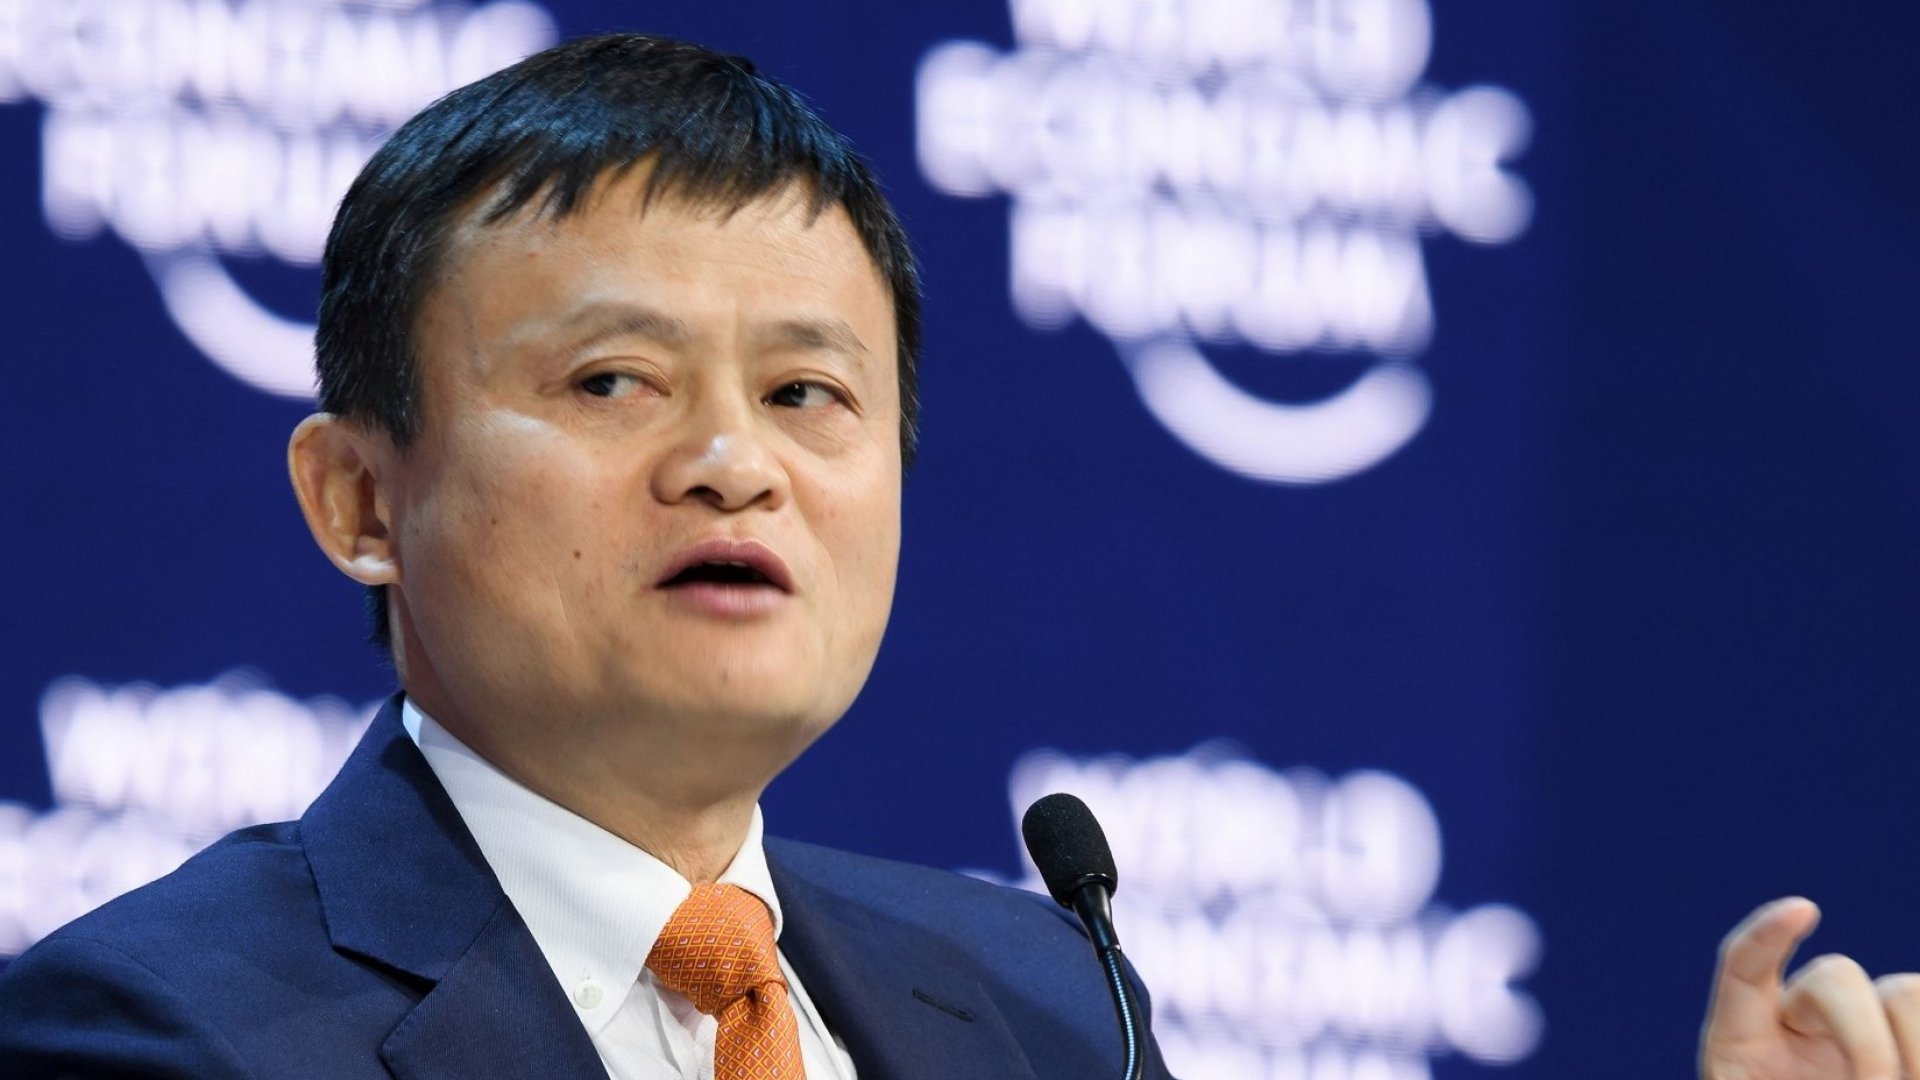 Jack Ma - بنیانگذار علی بابا:  "آینده یعنی ارز دیجیتال"!